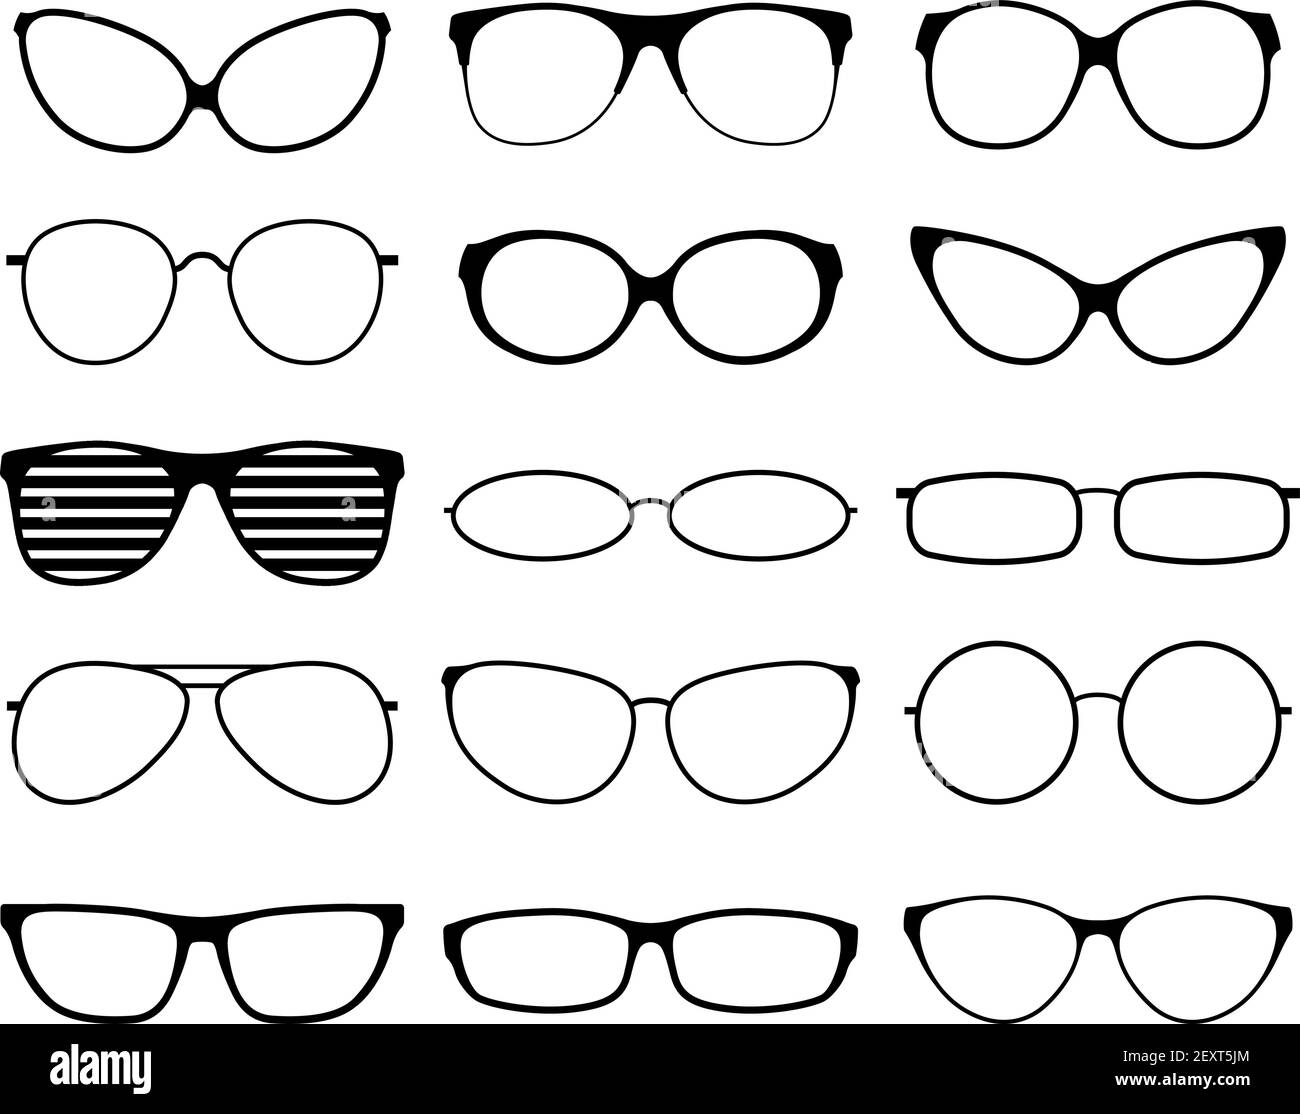 Gafas siluetas. Moda gafas de sol marcos, gafas negras. Geek y hipopótamos.  Hombre mujer gafas. Iconos vectoriales conjunto de lentes de la vista,  ilustración del borde de los anteojos Imagen Vector de